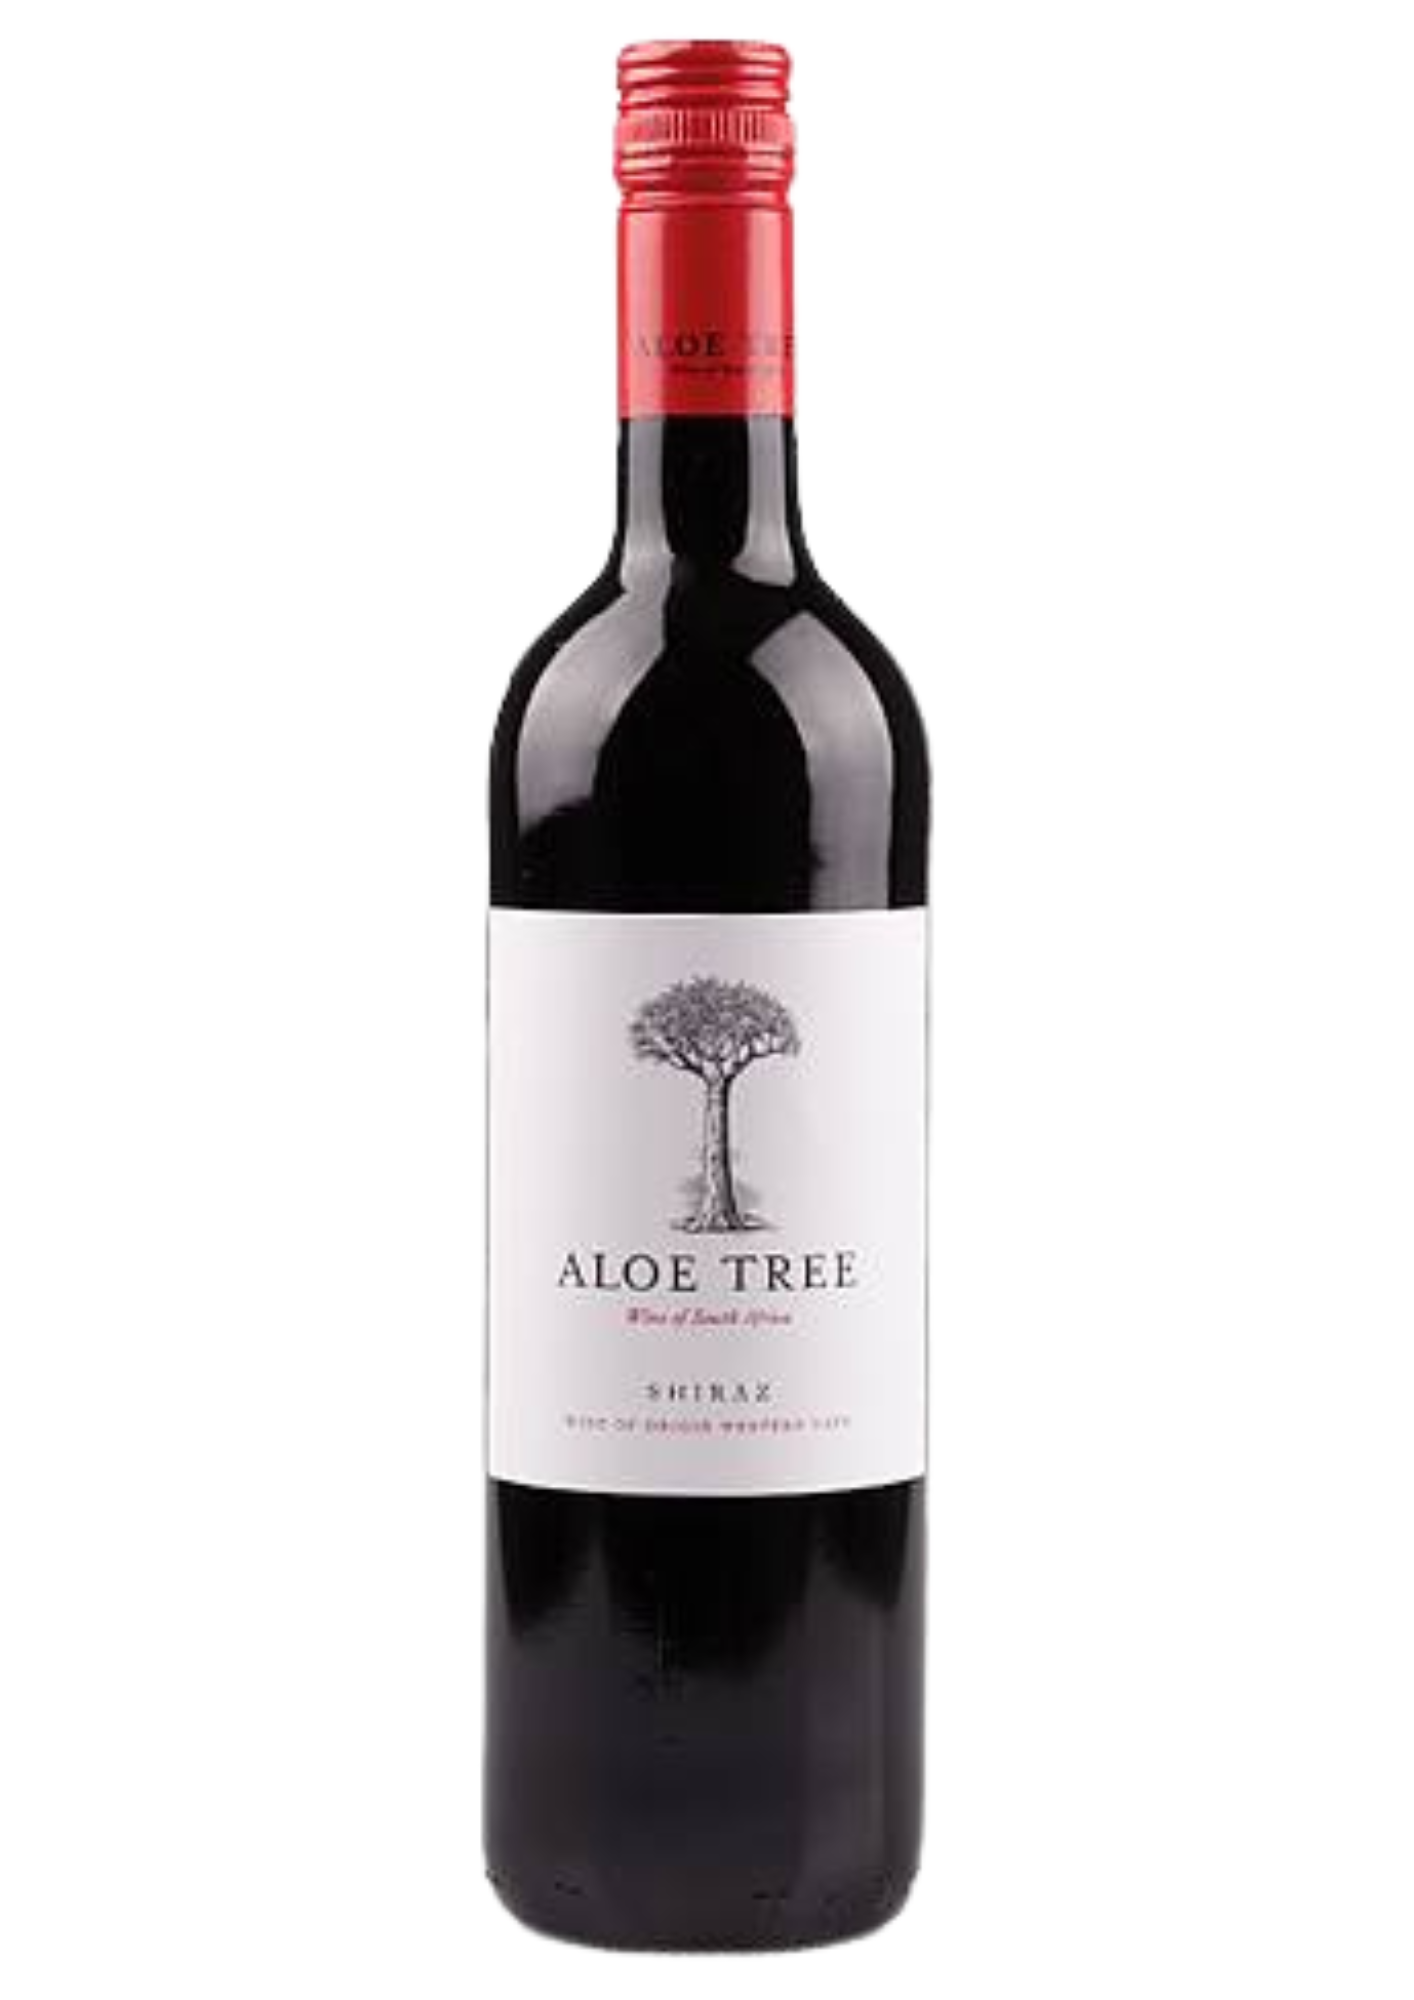 aloe-tree-shiraz-wine